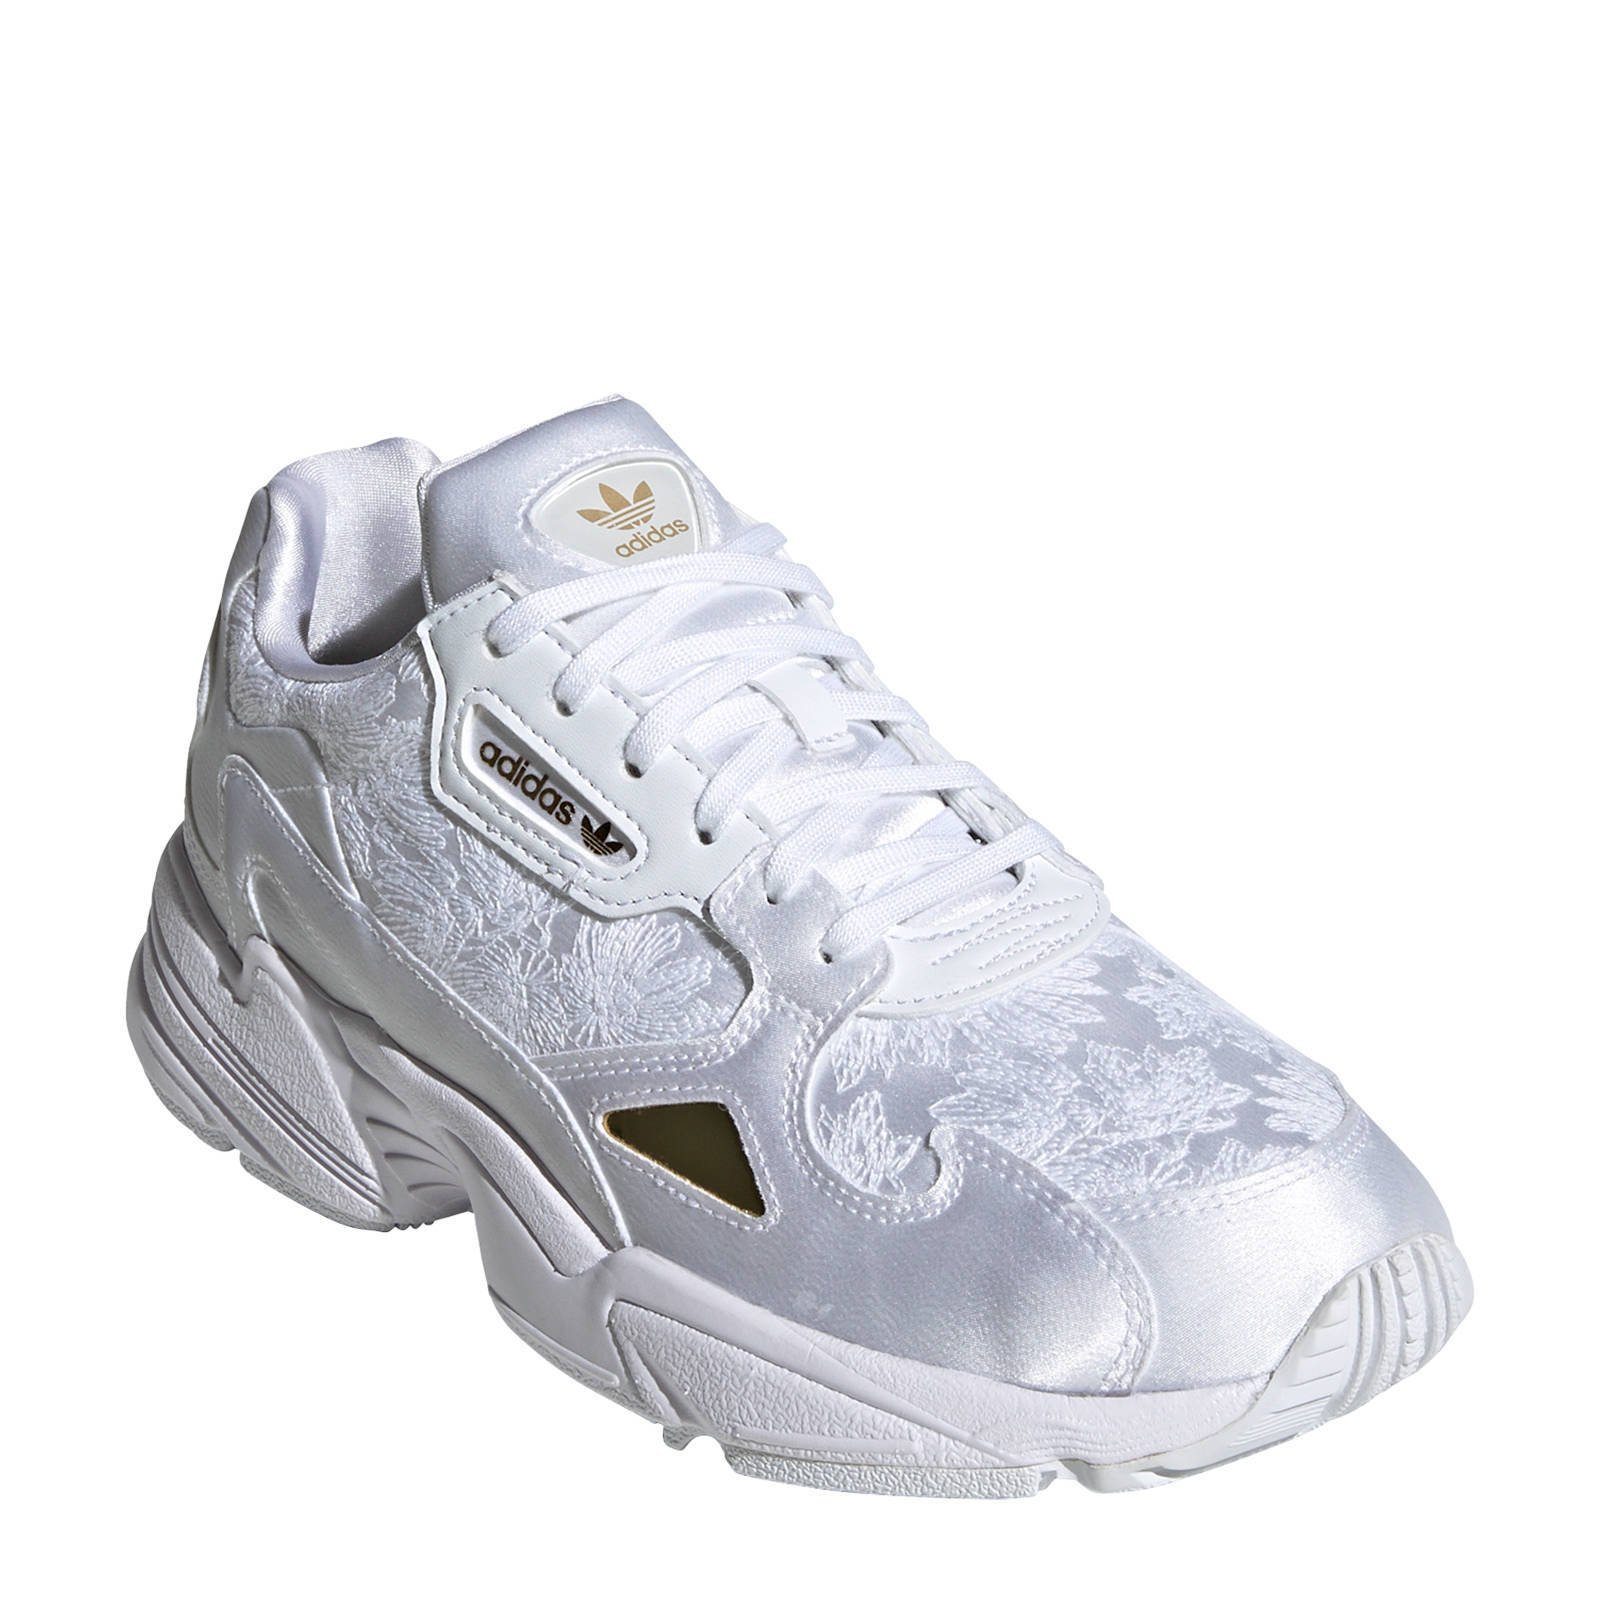 Falcon W sneakers wit/goud metallic